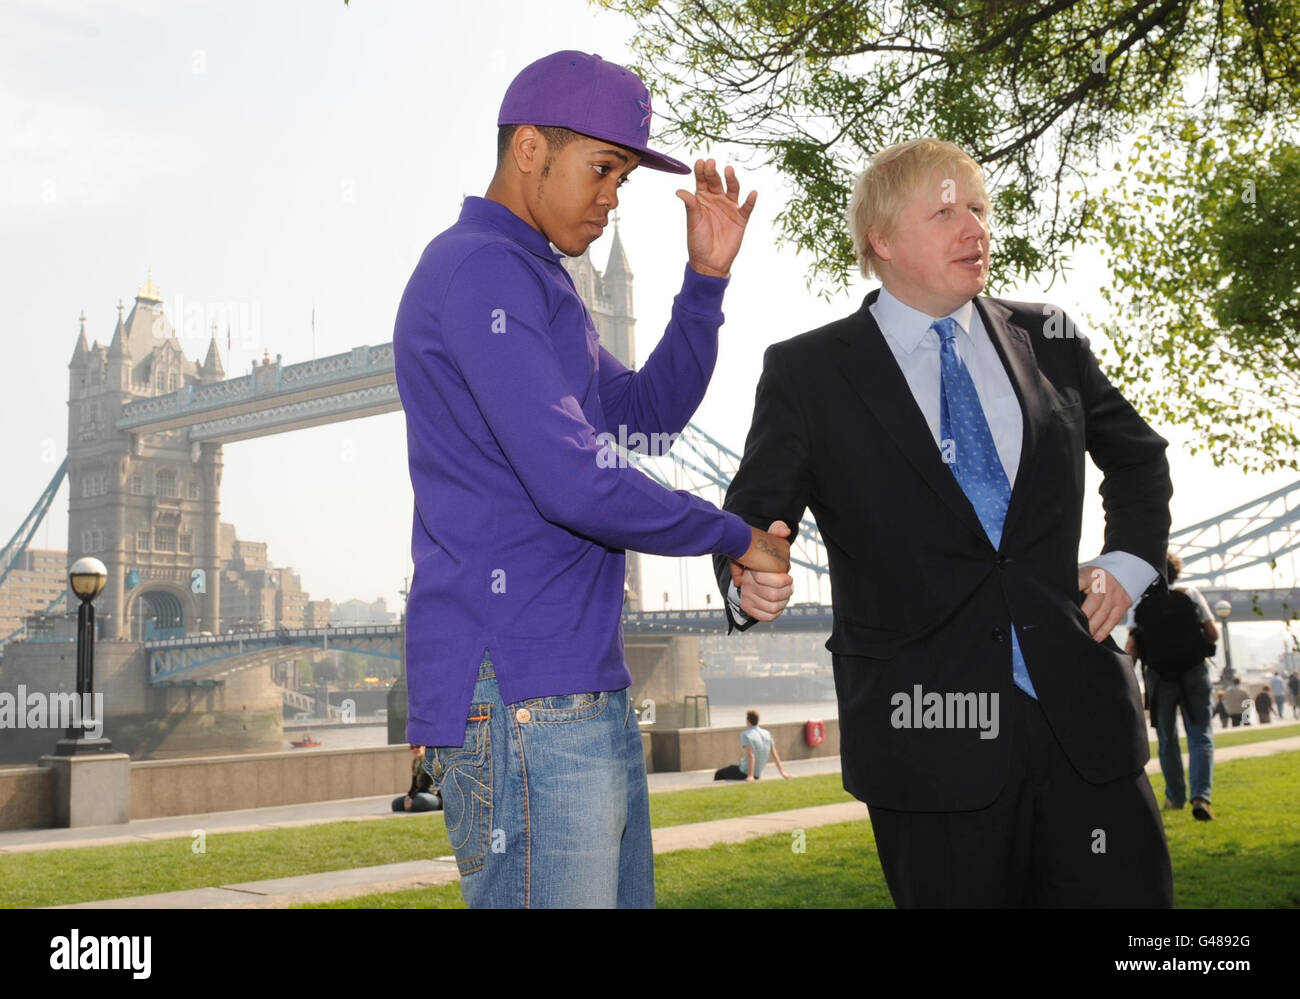 Der Londoner Bürgermeister Boris Johnson (rechts) trifft den preisgekrönten Rapper Chipmunk im Londoner City Hall, wo er bei Access All Areas sprach, einem Musikseminar für junge Menschen, das im Rahmen der Veranstaltung Mayor's Rhythm of London organisiert wurde. Stockfoto